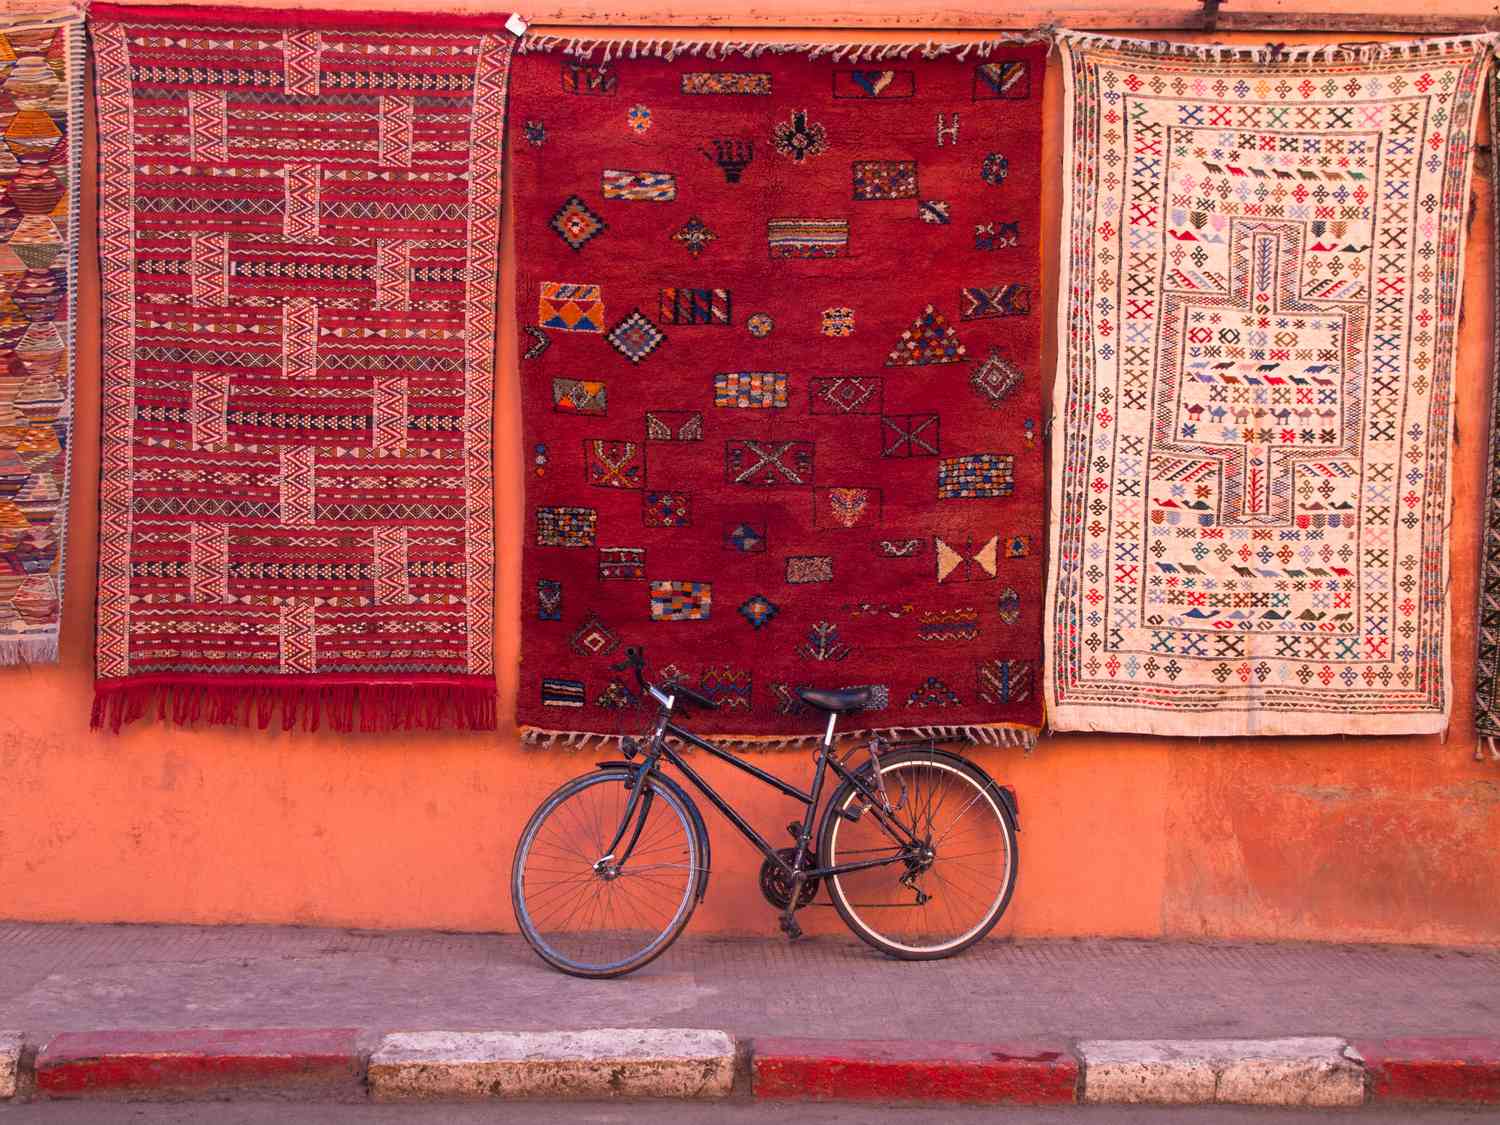 Bicicleta estacionada na parede sob tapetes pendurados com padrões tradicionais.